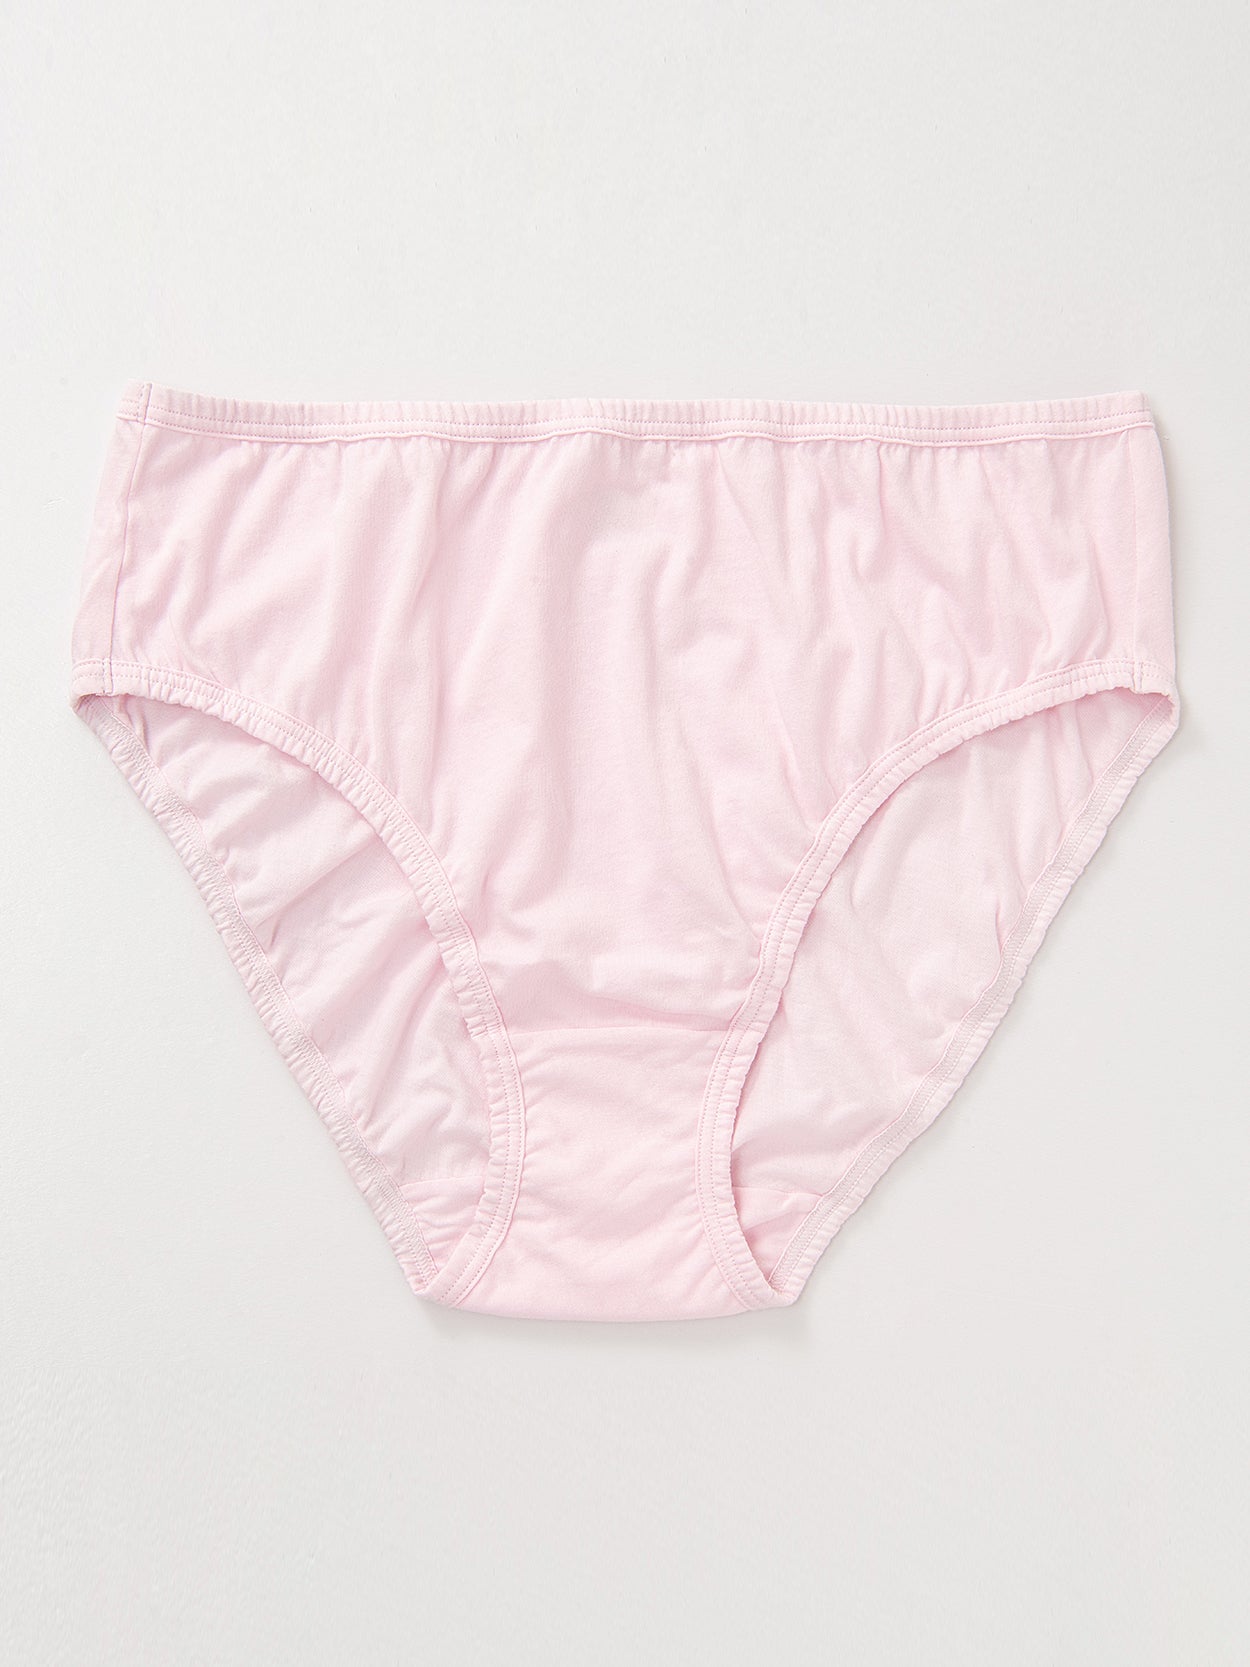 High-Cut Brief Cotton Plus Size Underwear 3 PCS Pink